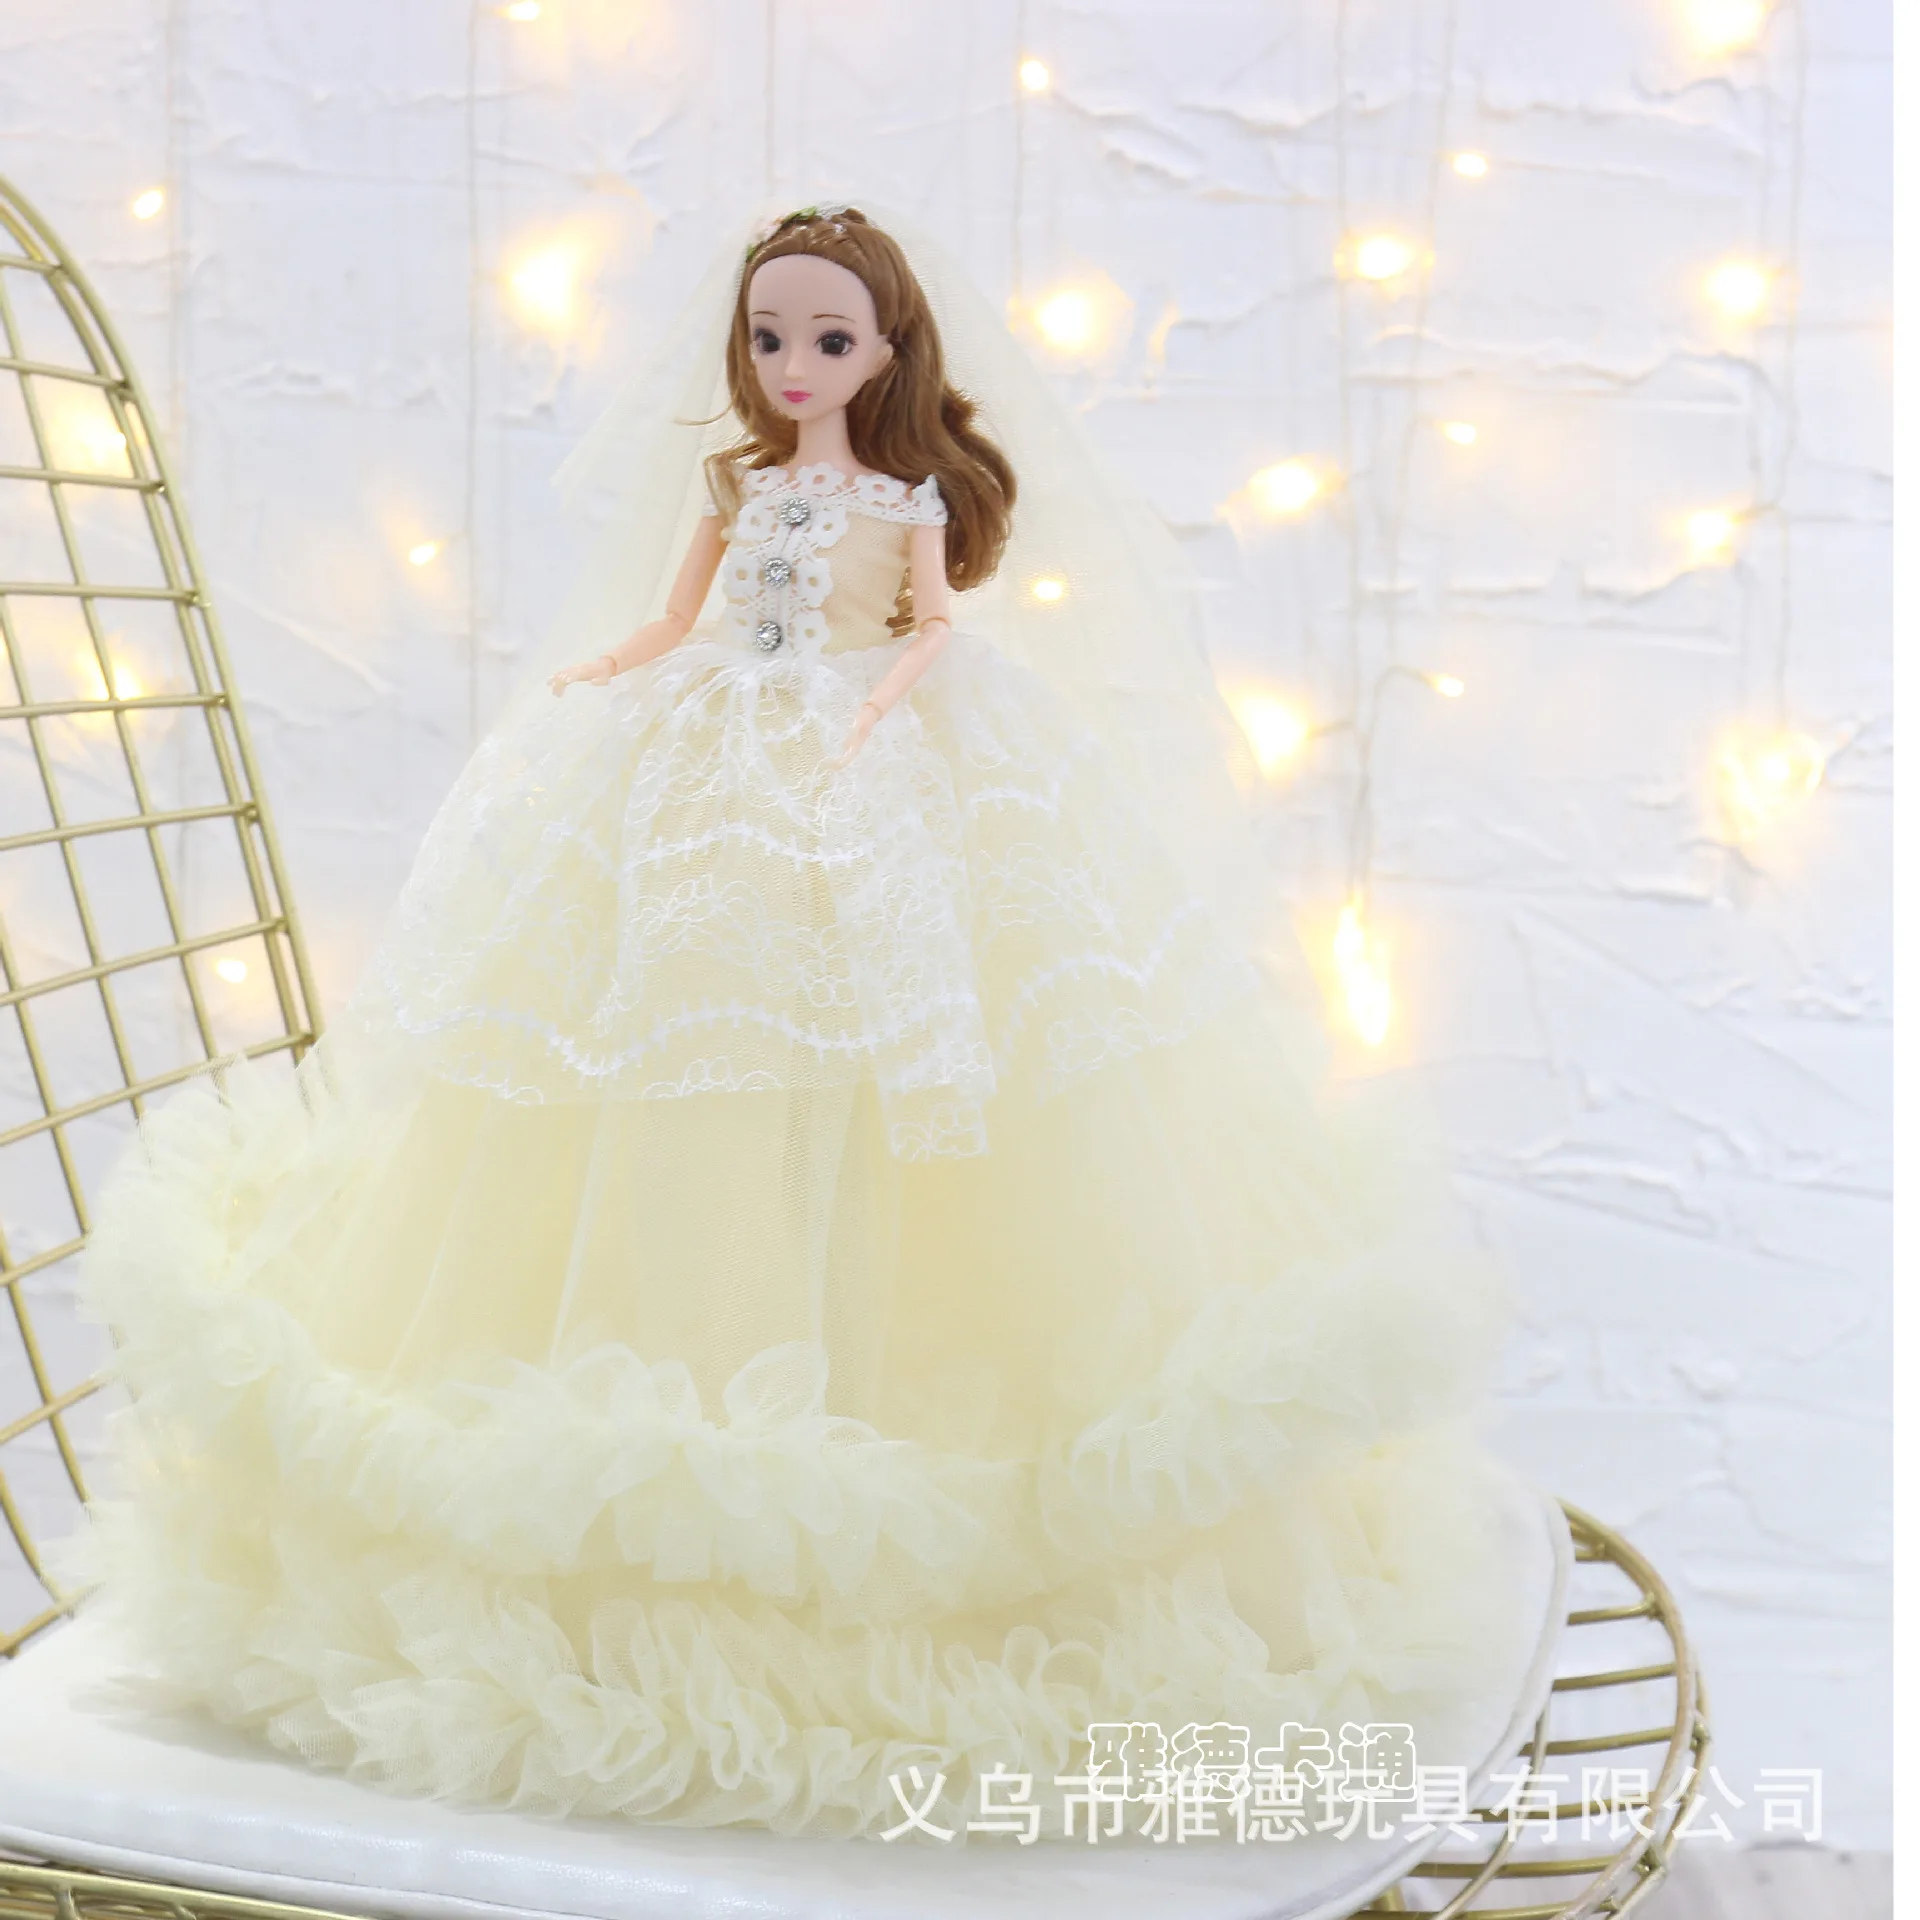 

Meet Lefutur 1/4bjd wedding doll 45cm gift for girls multiple styles best Valentine's Day gift handmade beauty toys